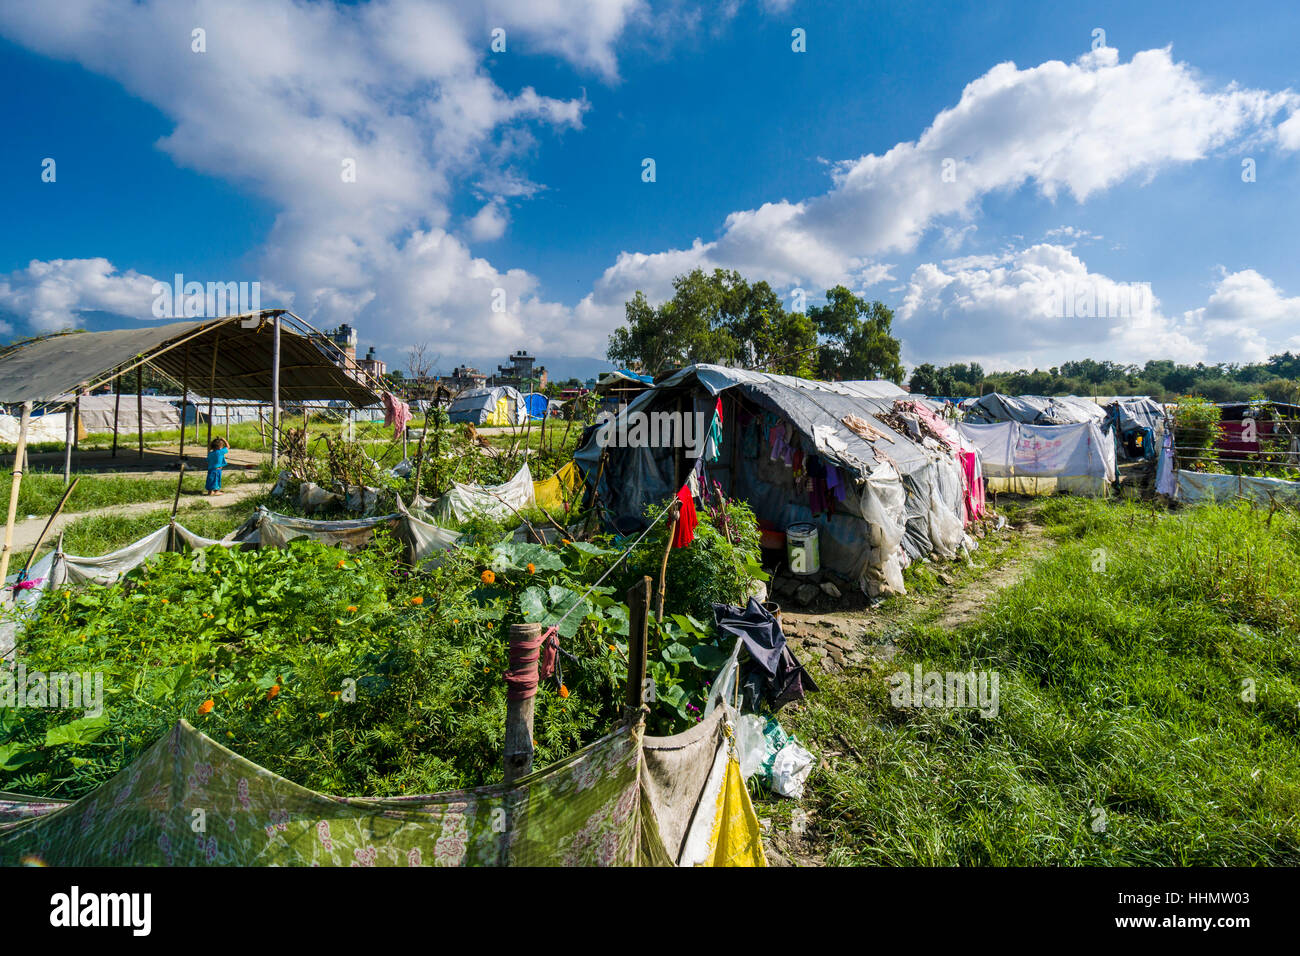 Gemüse wächst im Zeltlager für Menschen, die Häuser in 2015 Erdbeben, Kathmandu, Nepal Kathmandu Bezirk verloren Stockfoto